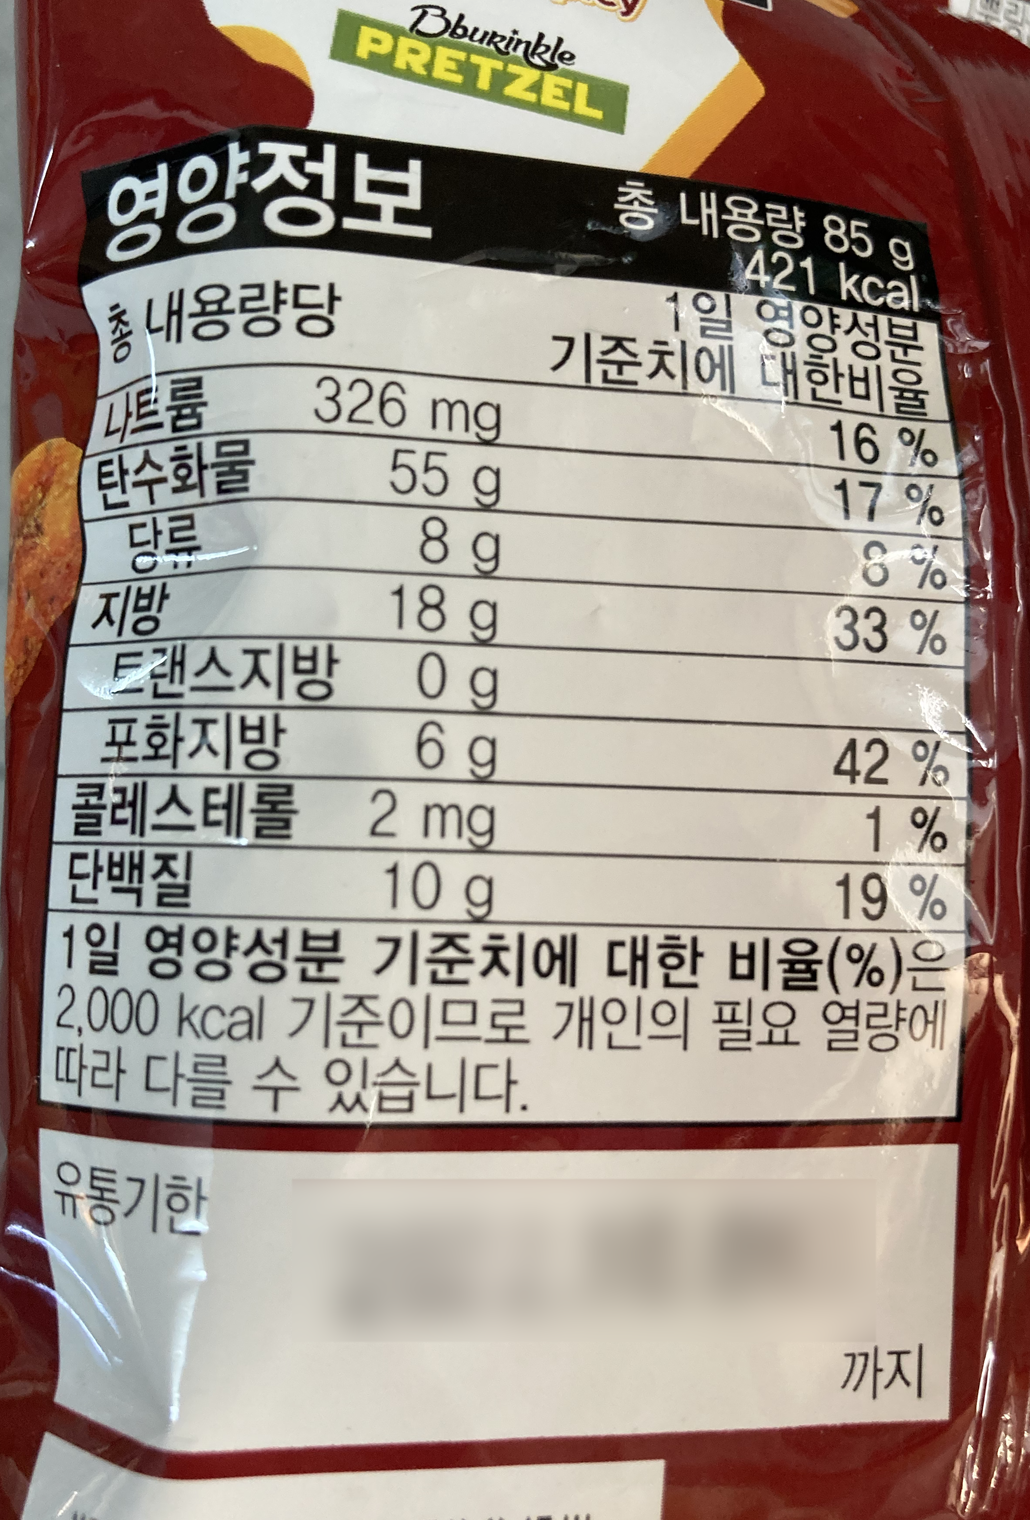 韓國食品-[Emart] I'm E Bburinkle Spicy Pretzel 85g